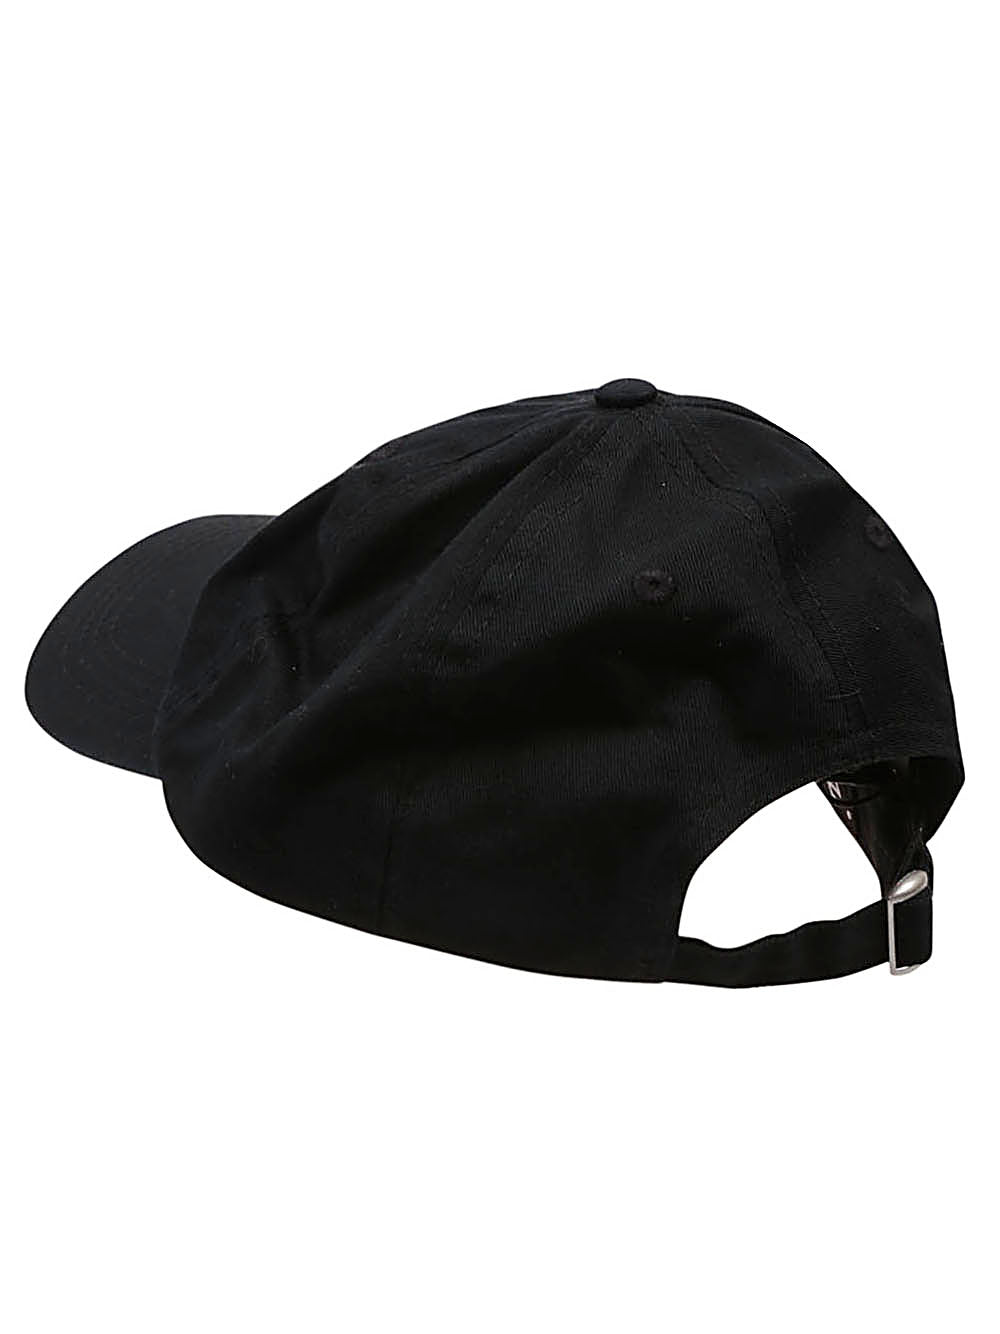 Encre' Hats Black